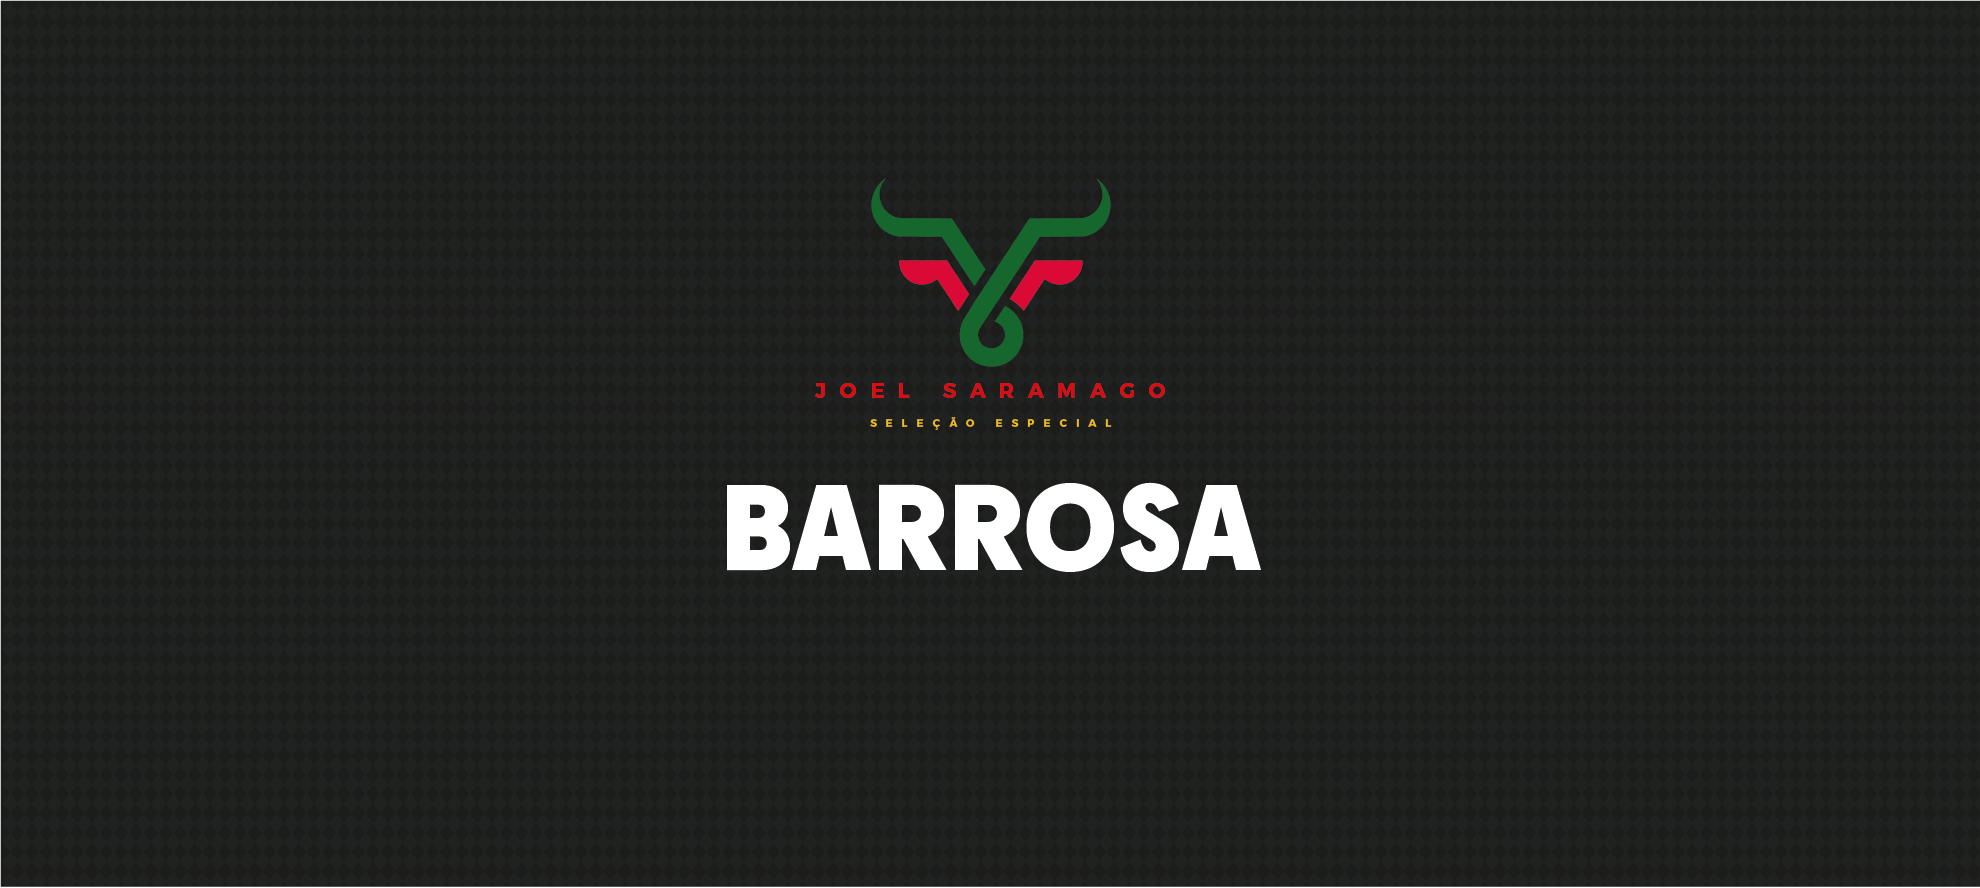 Barrosa